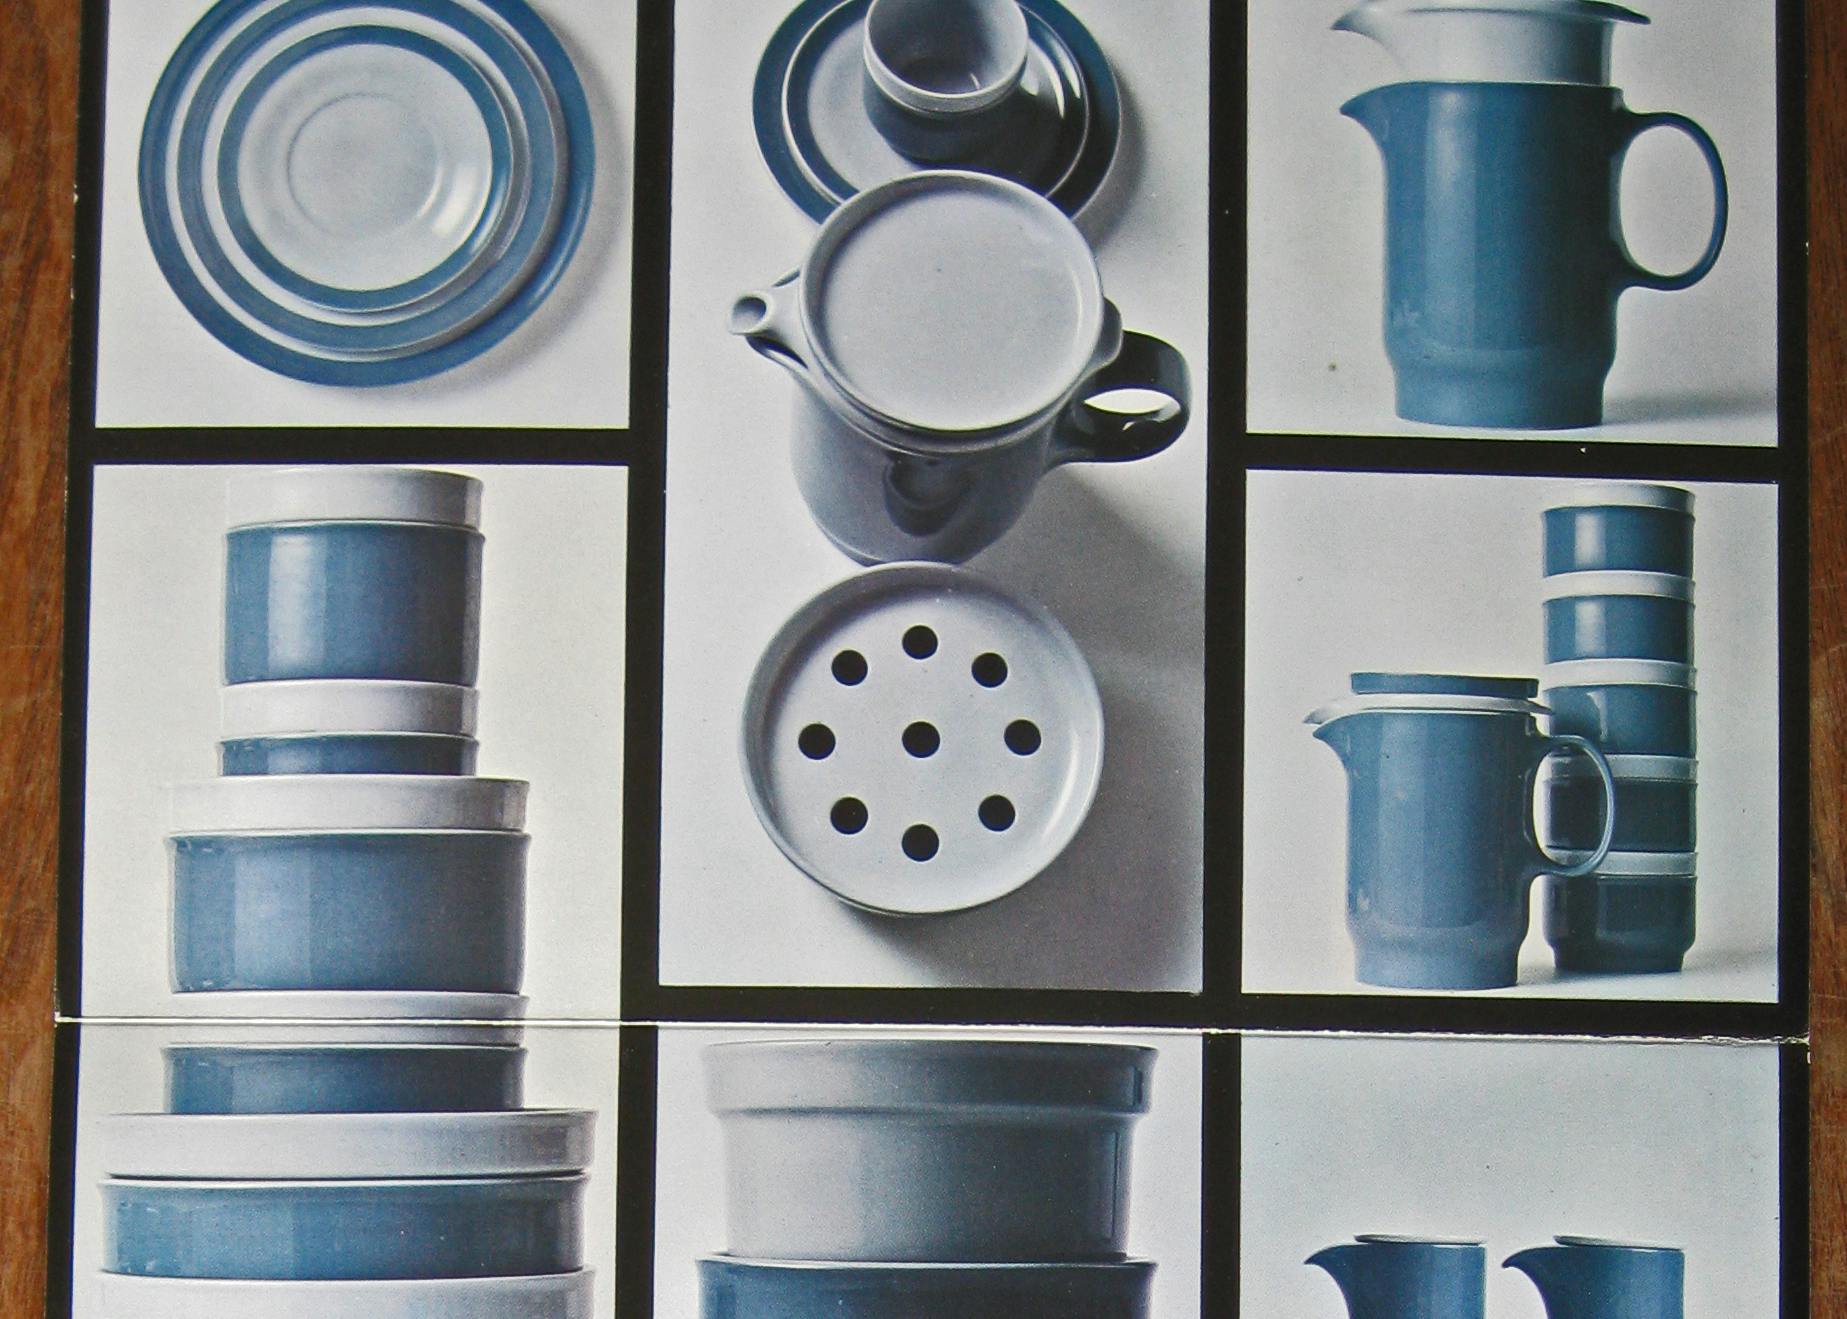 Immagine pubblicitaria di piatti, ciotole, vasi e tazze blu e bianchi